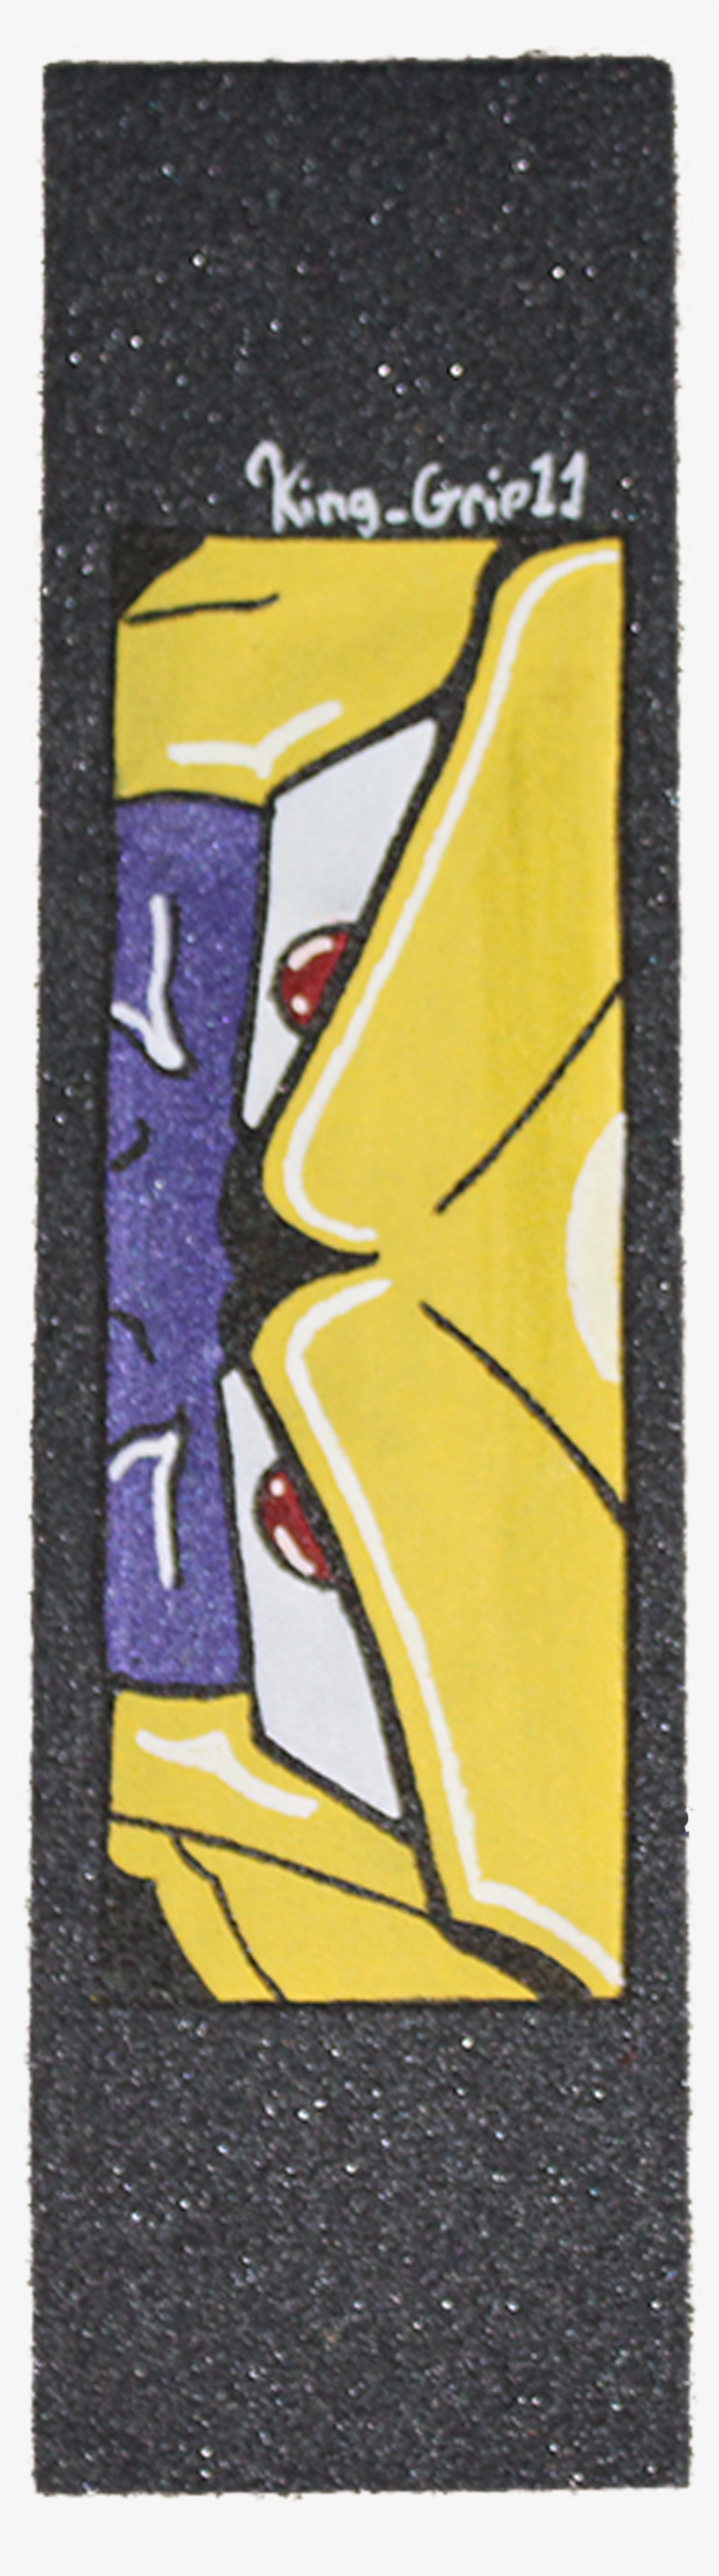 Golden Frieza - Cartoon, transparent png #1960658